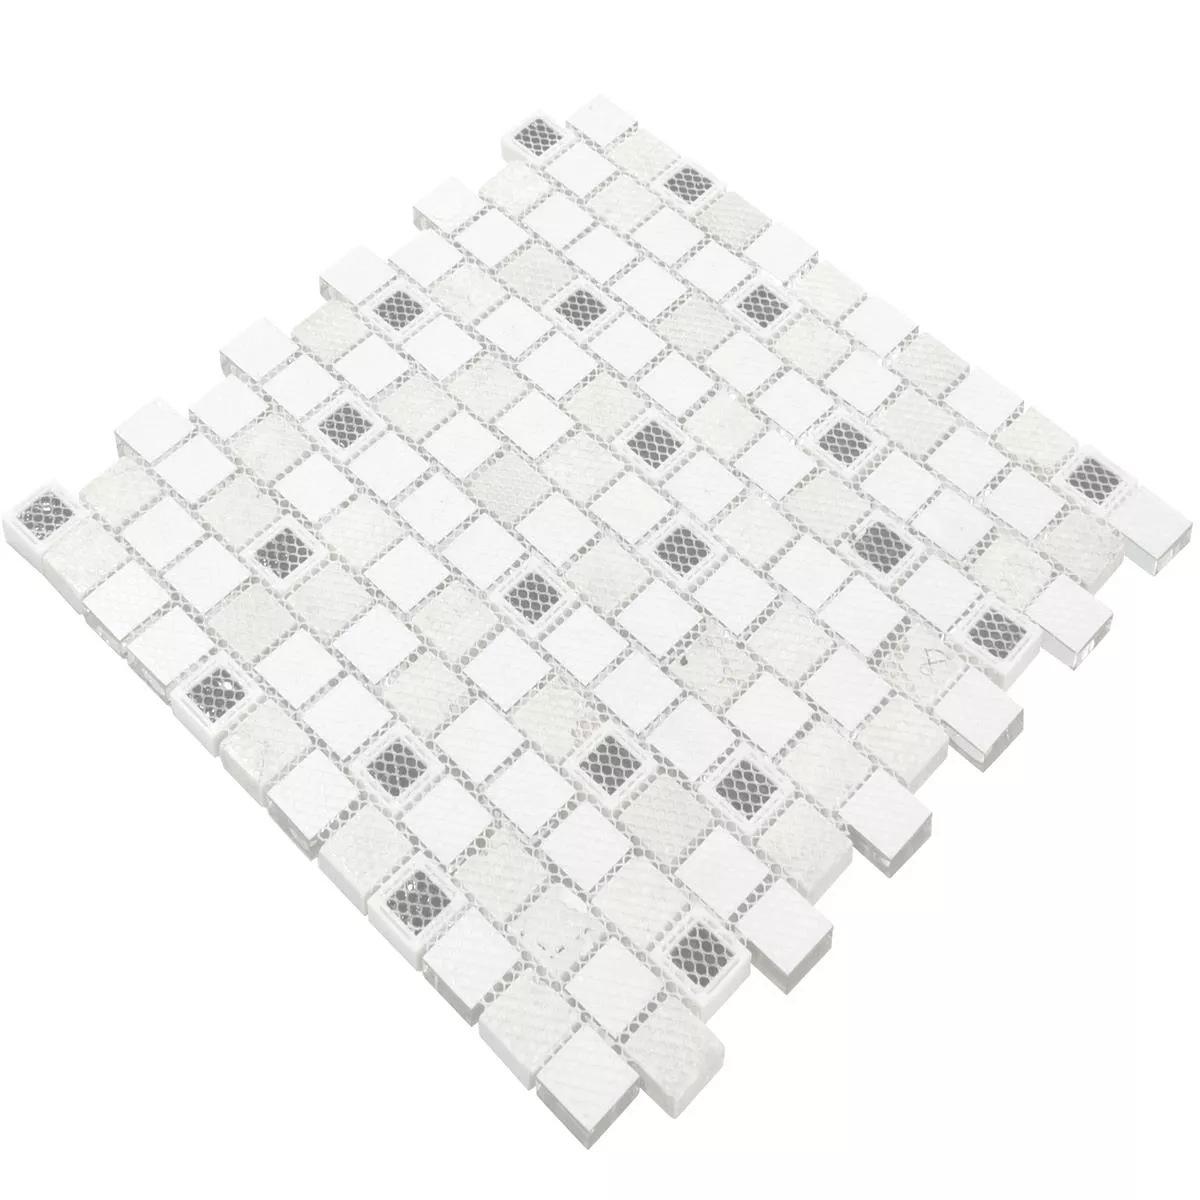 Vidro Plástico Mosaico De Pedra Natural Lunaquell Branco